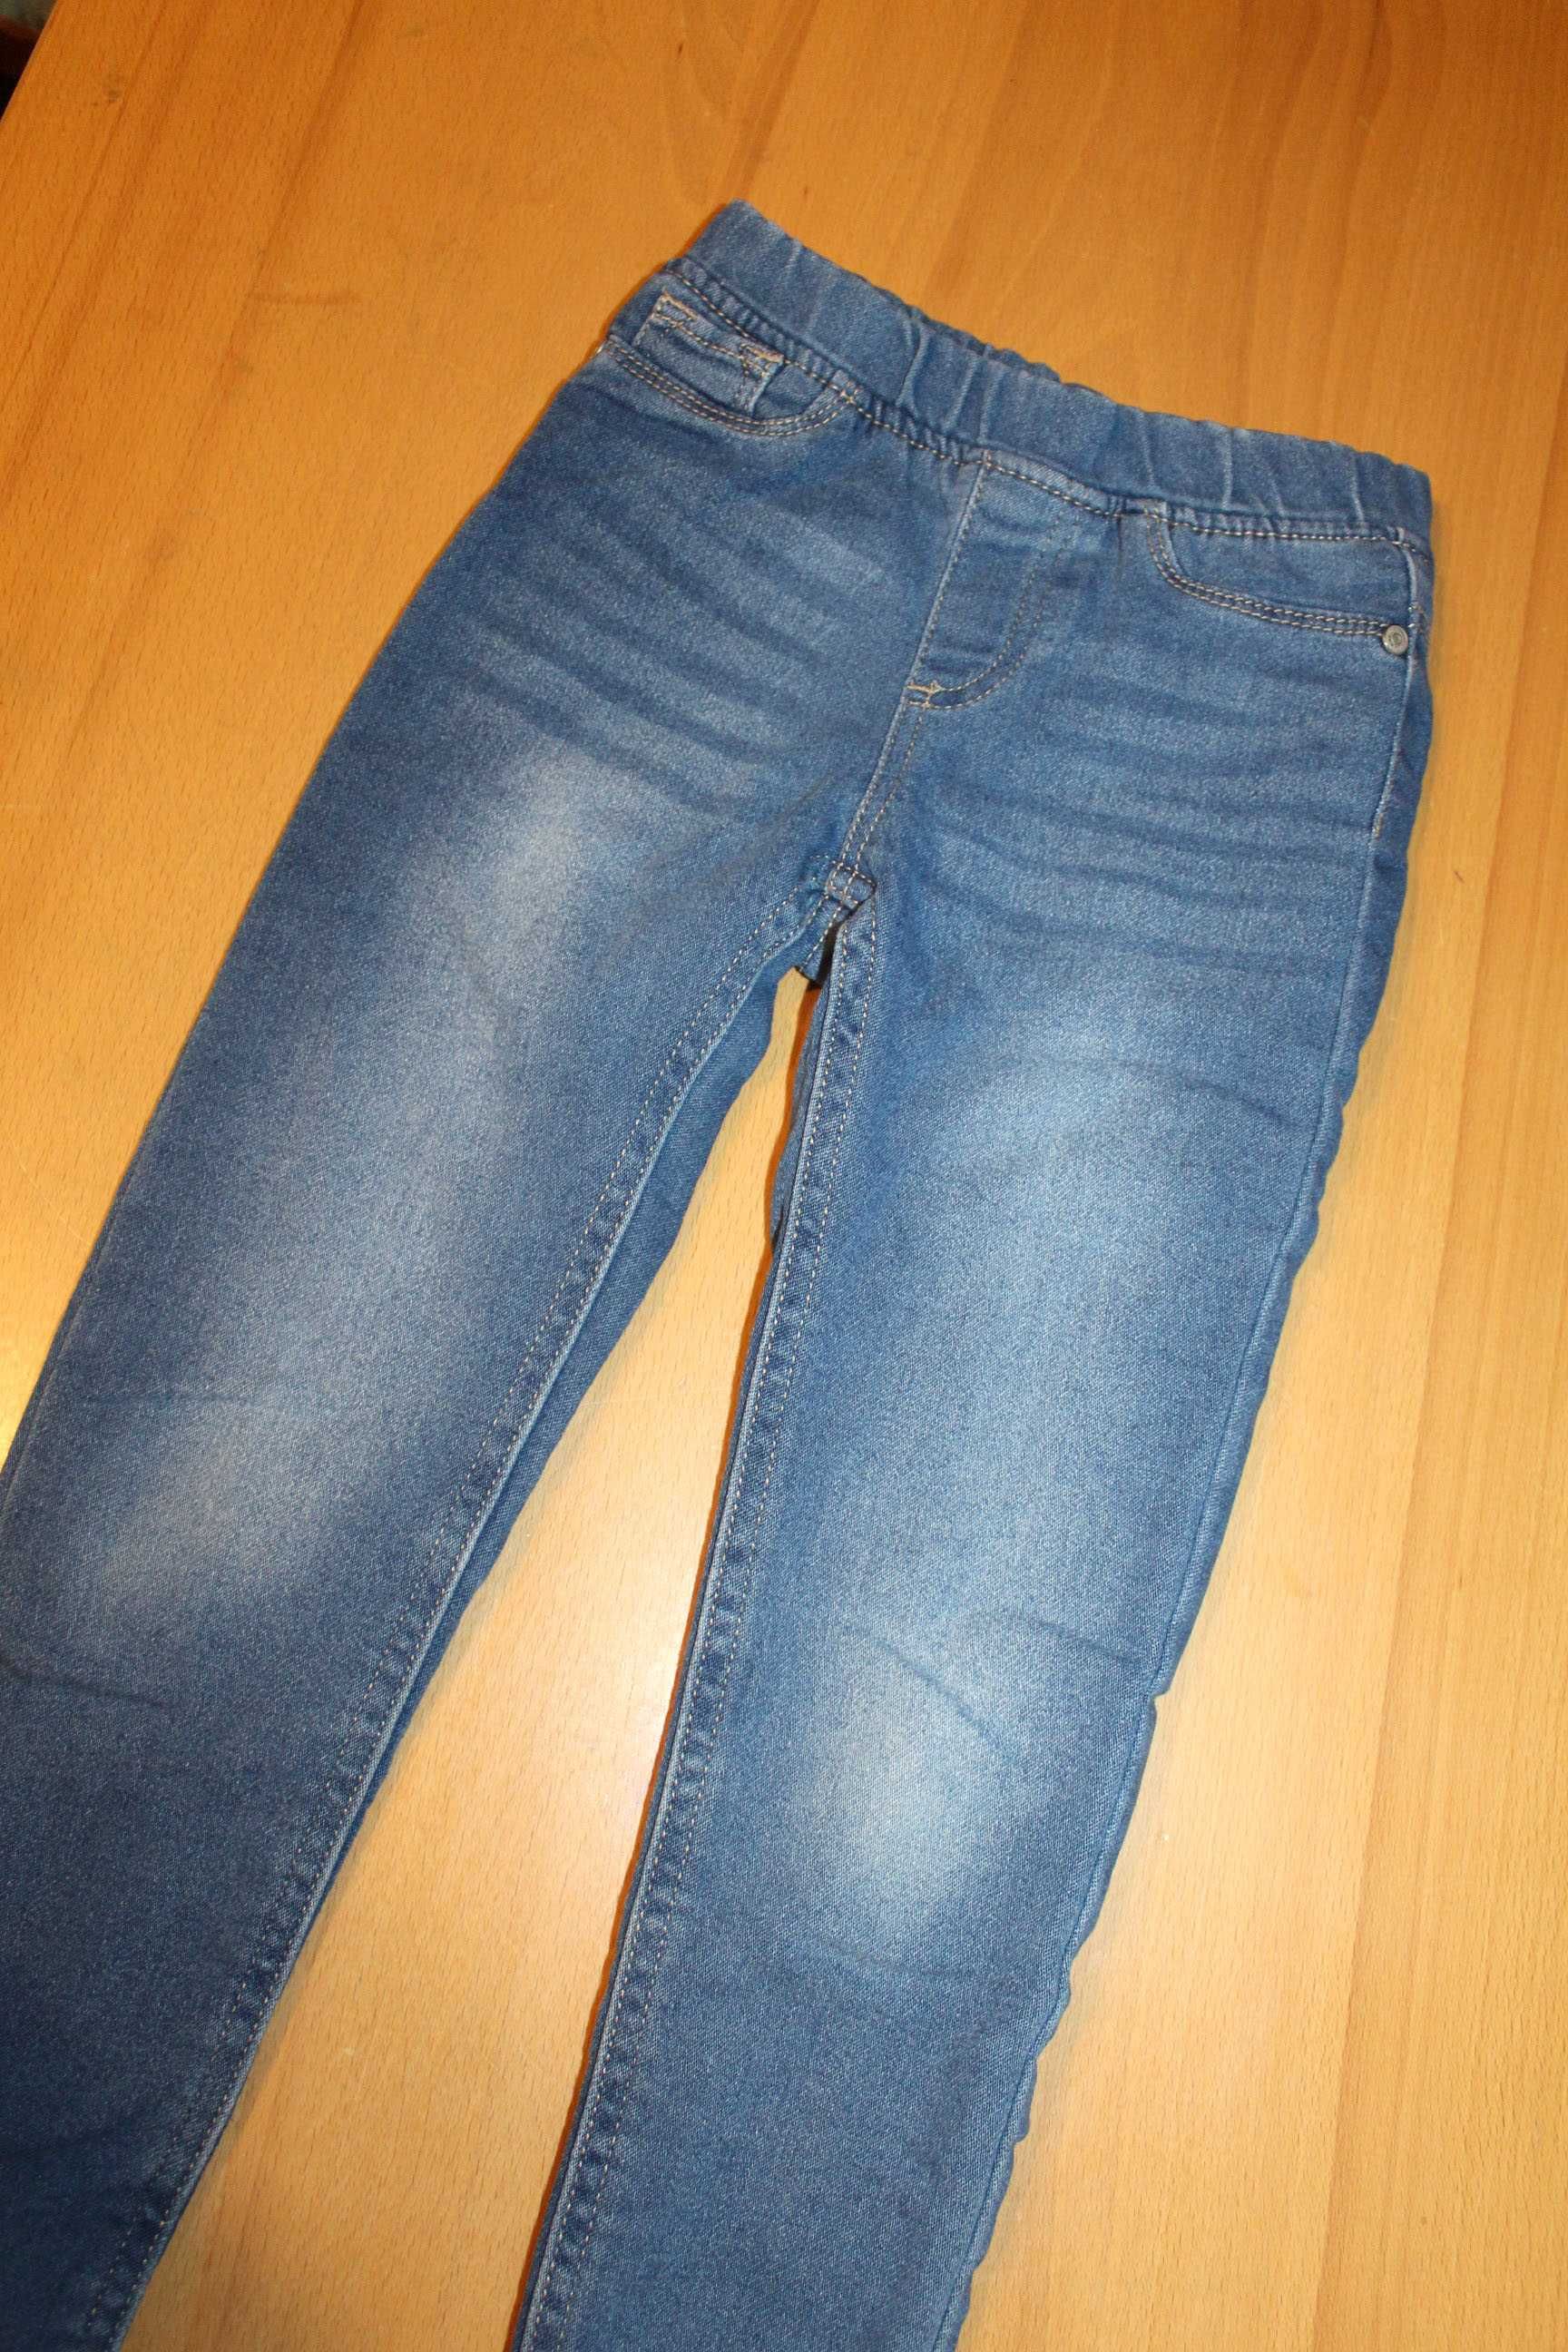 (165) Spodnie r. 116 Ocieplane podszyte jeansowe dżinsowe grube ciepłe